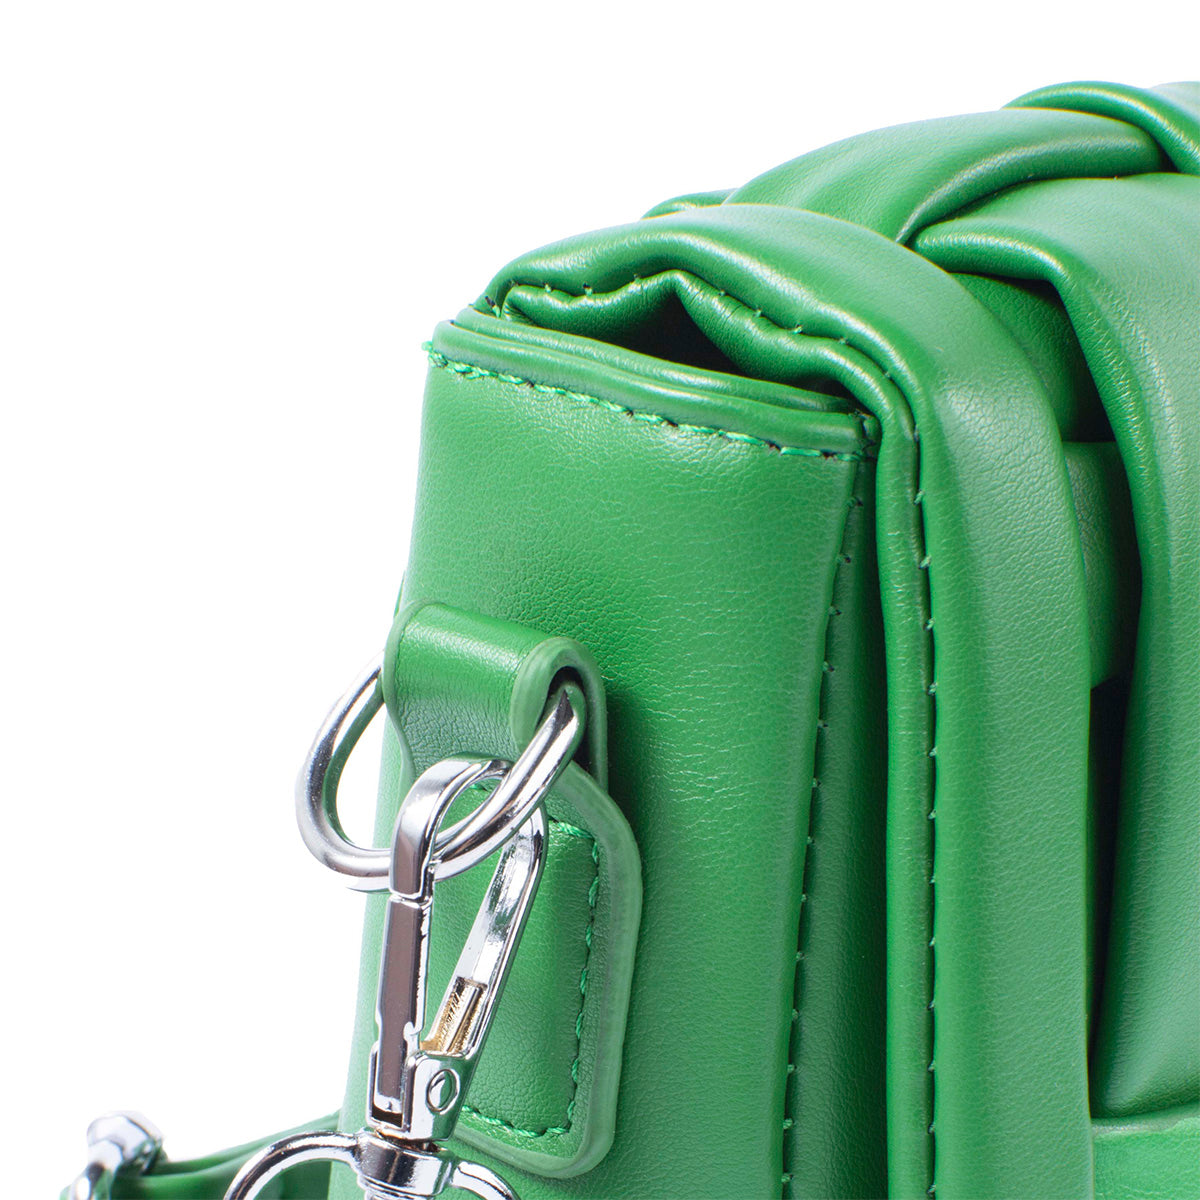 Bolso tipo bandolera color verde diseño acolchado y moderno